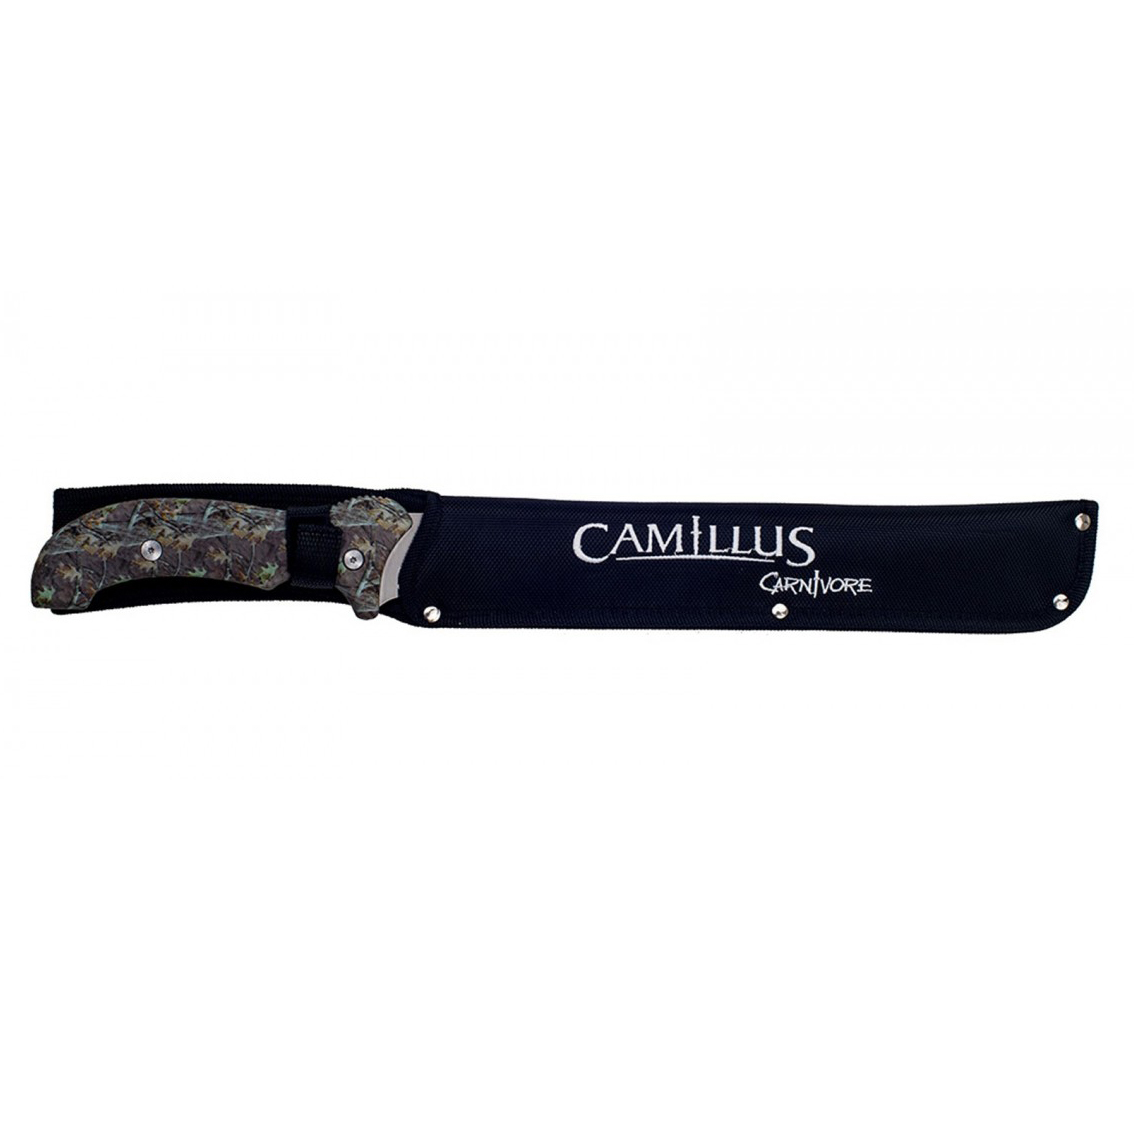 Мачете Camillus Carnivore Z, сталь 440А, рукоять термопластик GRN, камуфляж от Ножиков